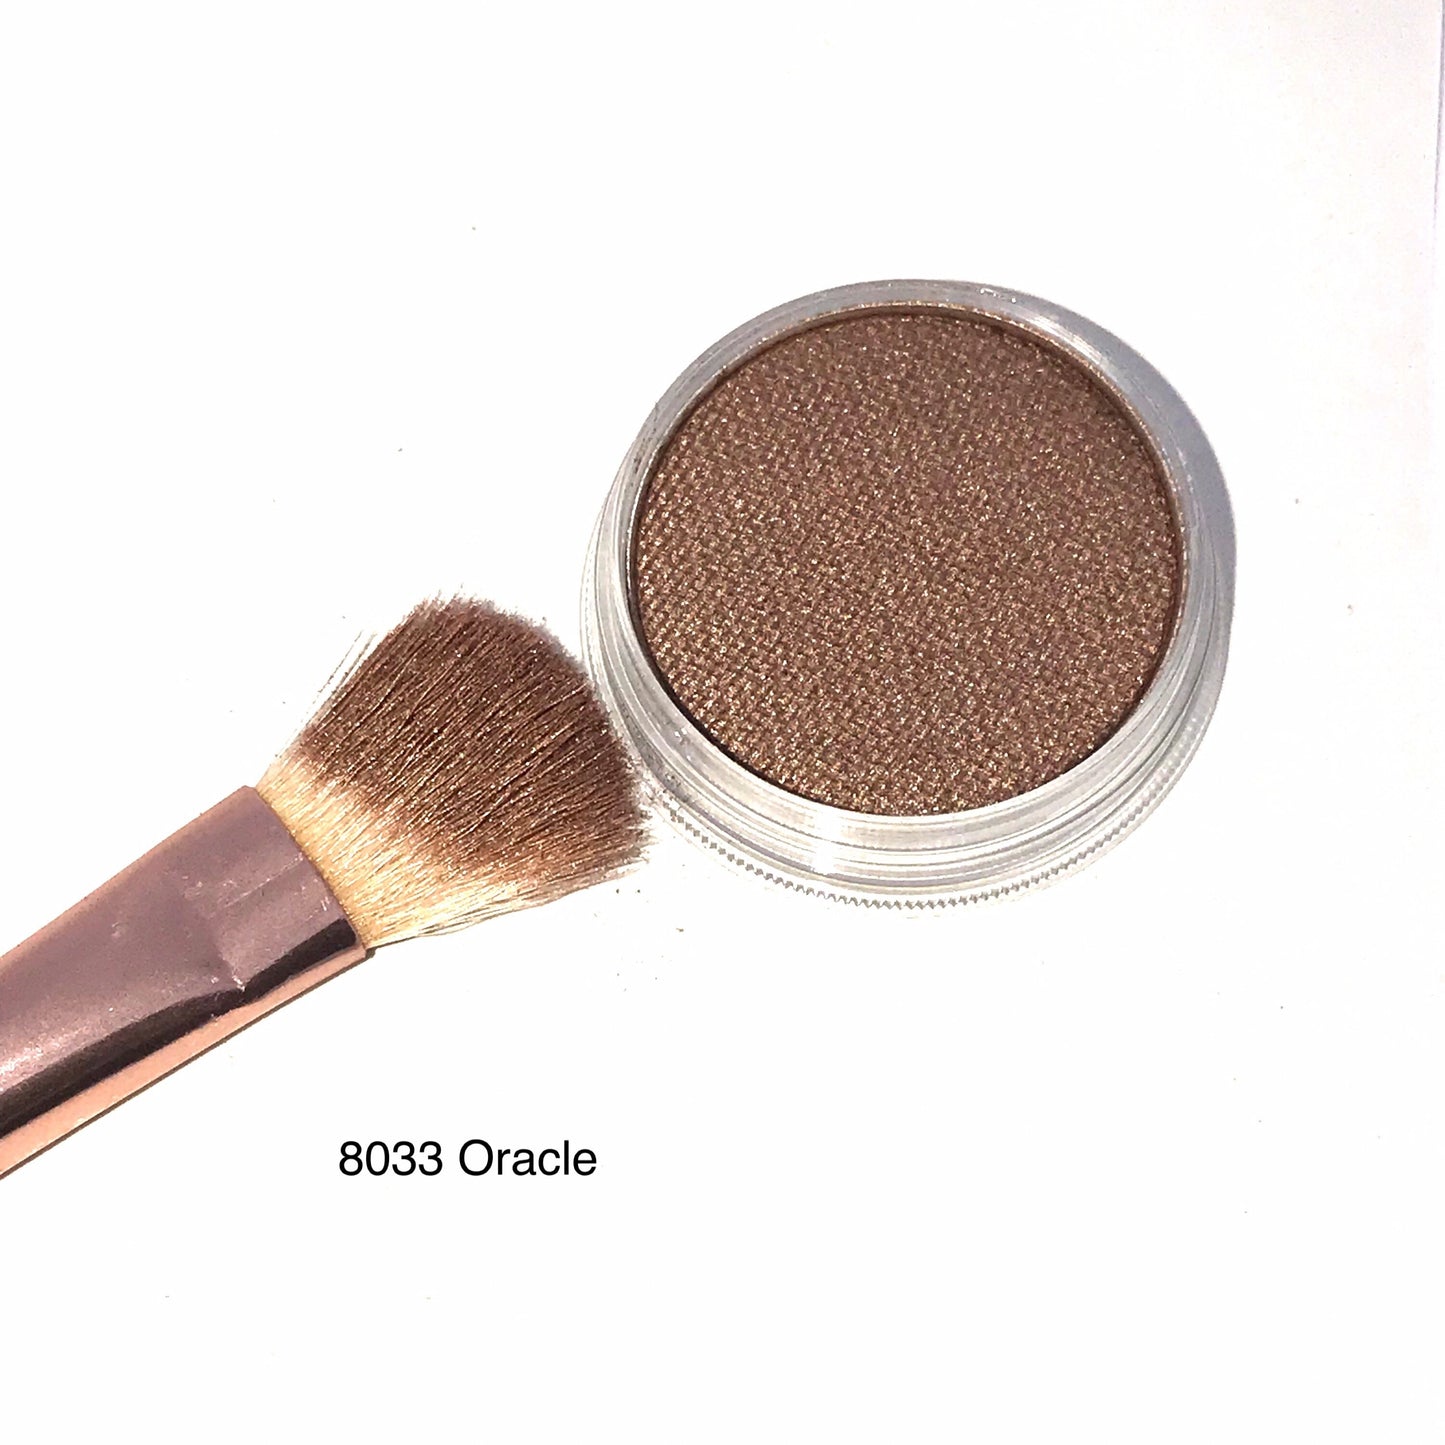 8033 Oracle - wekcosmeticsbeauty